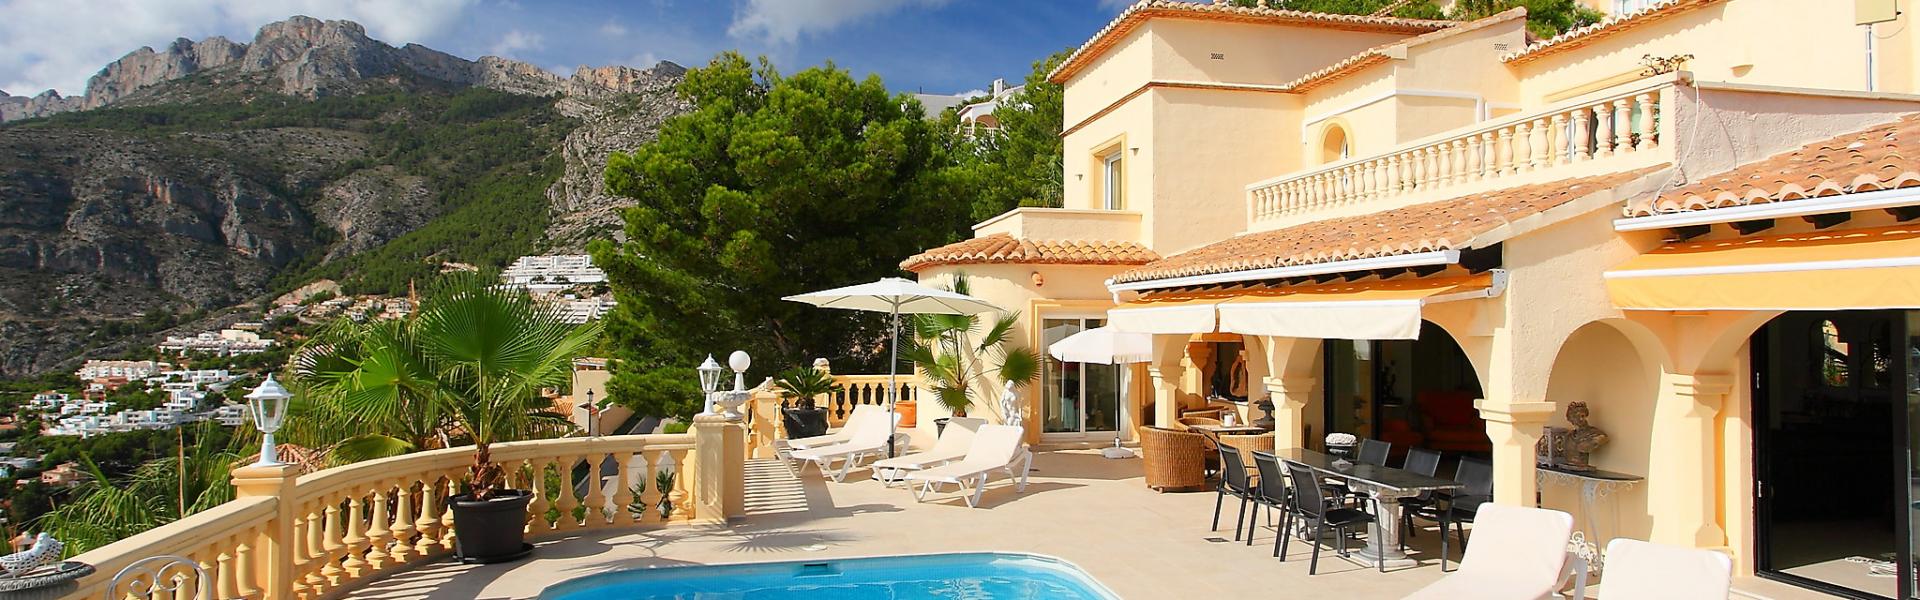 Ferienhaus mit Pool Sardinien - HomeToGo